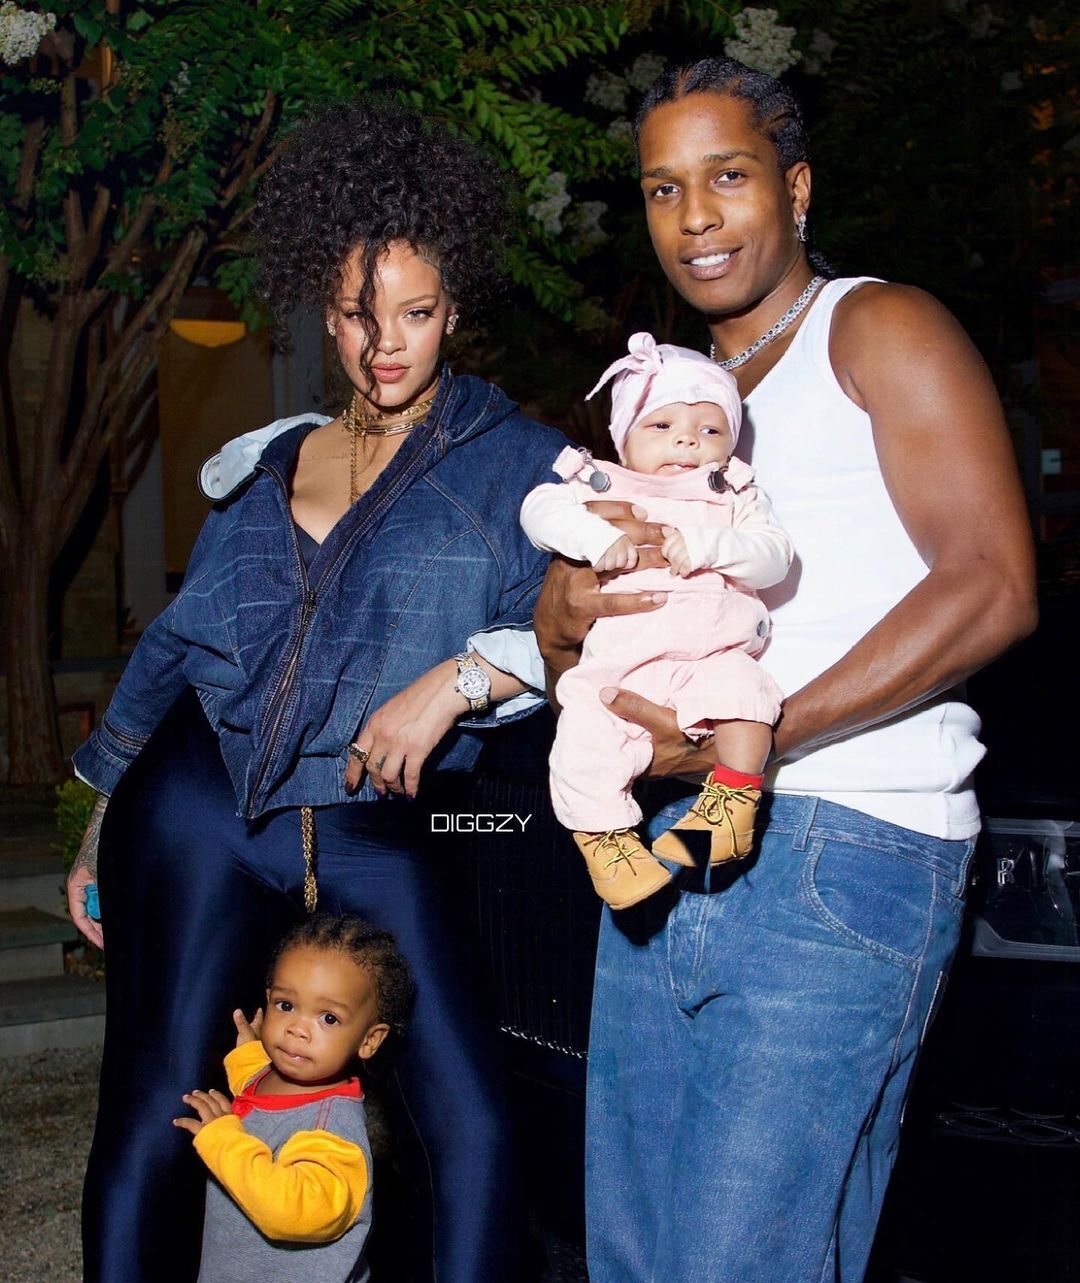 Рианна и ее скандальный бойфренд A$AP Rocky впервые показали новорожденного сына на семейных фото